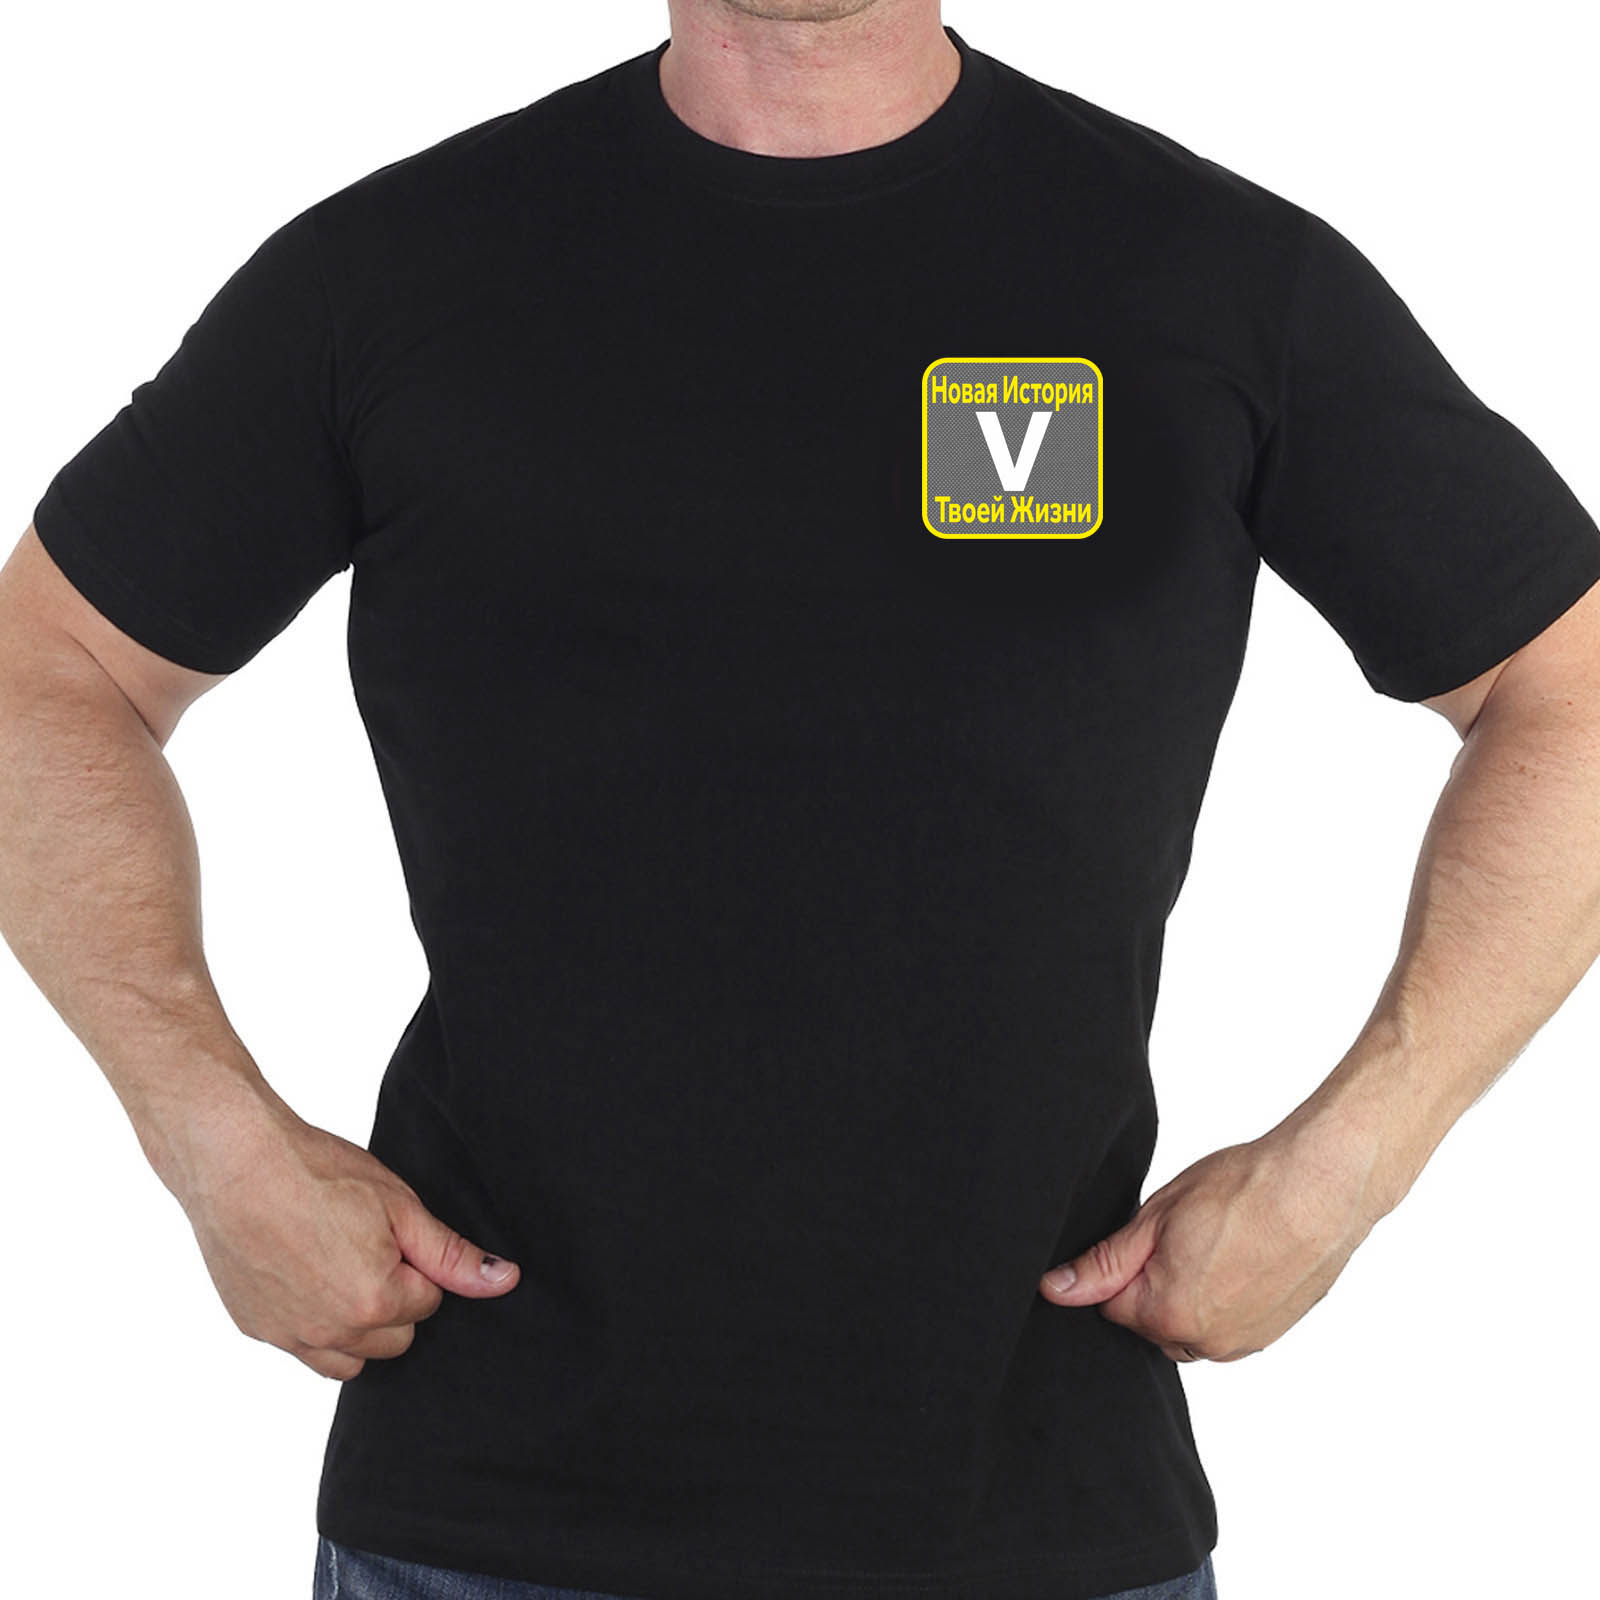 Купить черную футболку с термотрансфером V "Новая история твоей жизни"